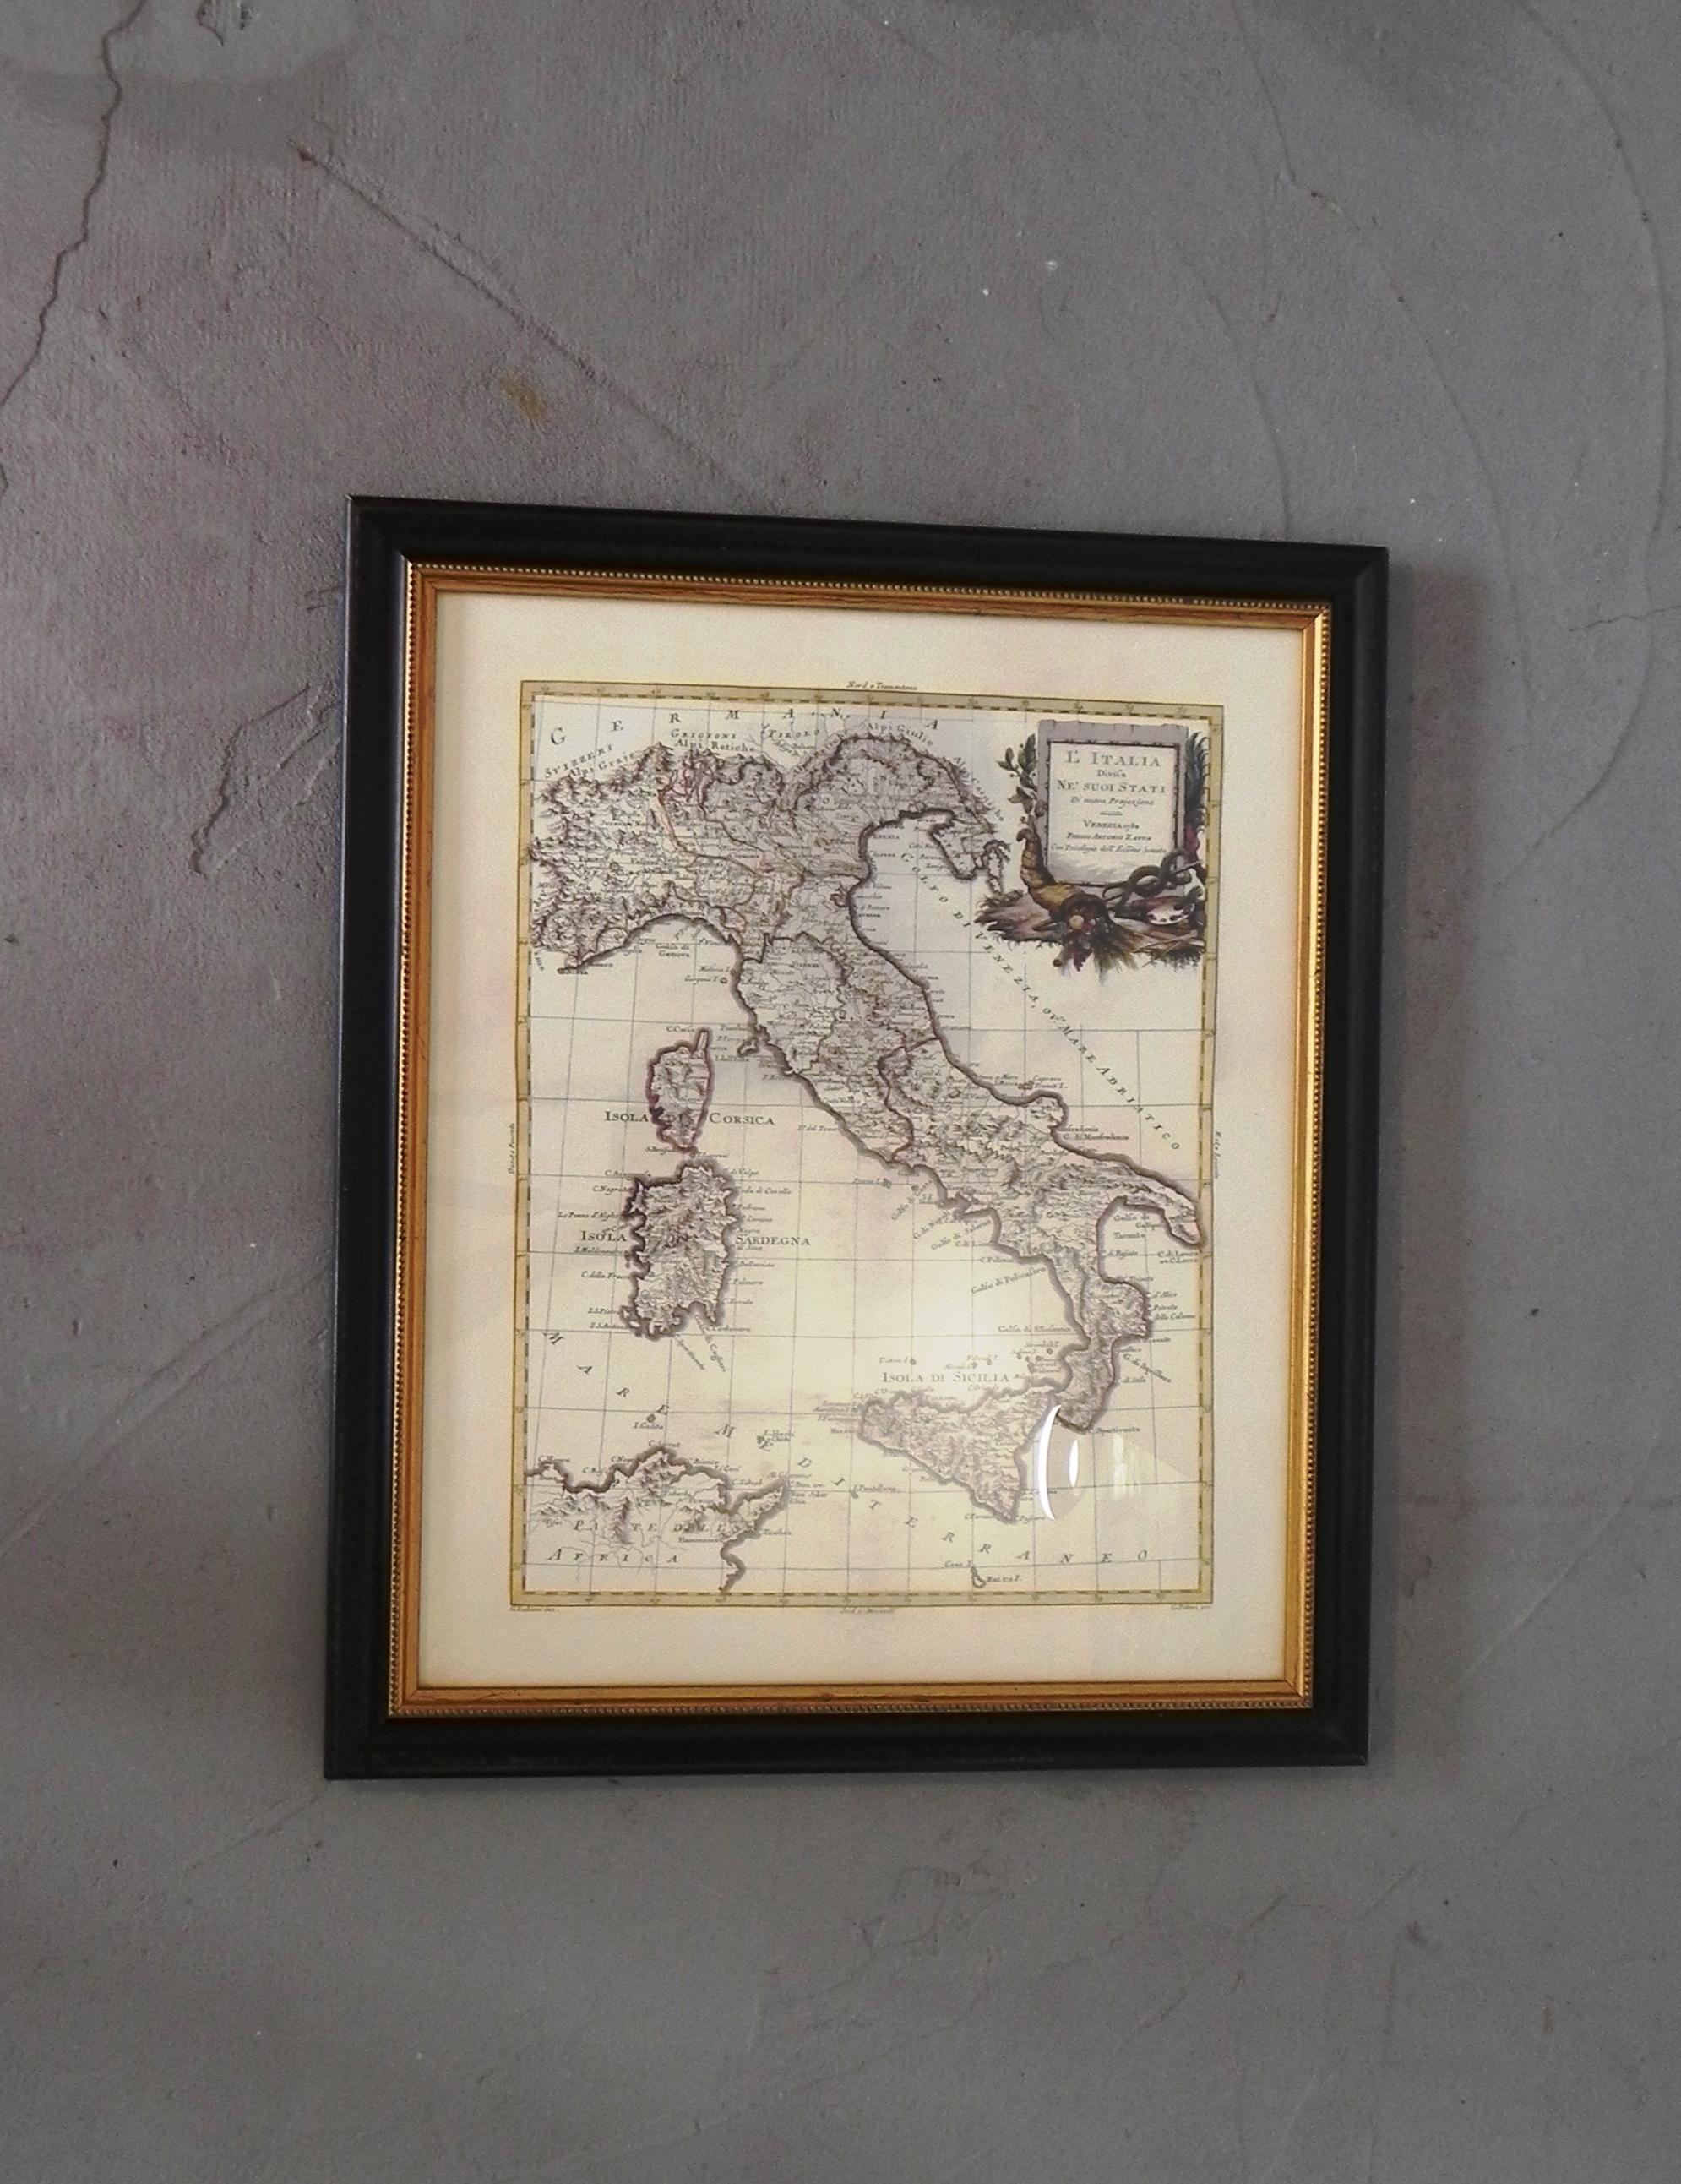 cartografia pregiata, Italia e i suoi stati nel 1782. riproduzione artistica artigianale su cotone a 5 colori anno 2012 edizione limitata. 96/2999. certificato e descrizione sul retro.